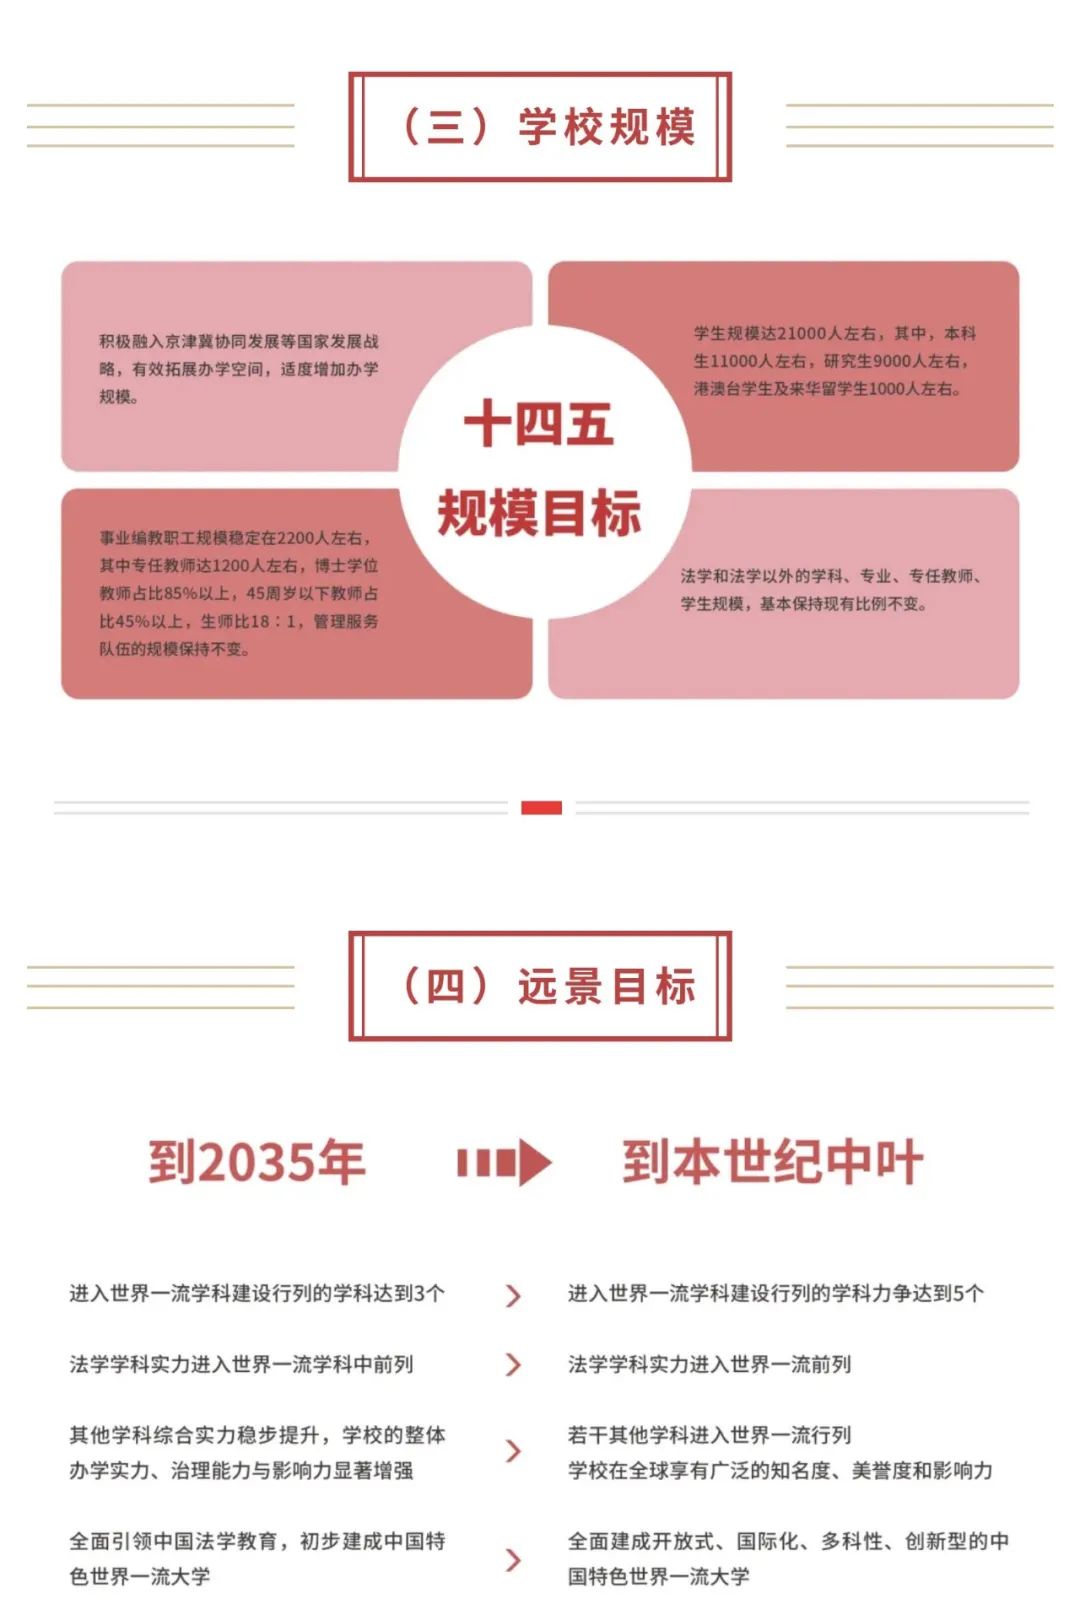 中国政法大学十四五发展规划20212025年印发实施